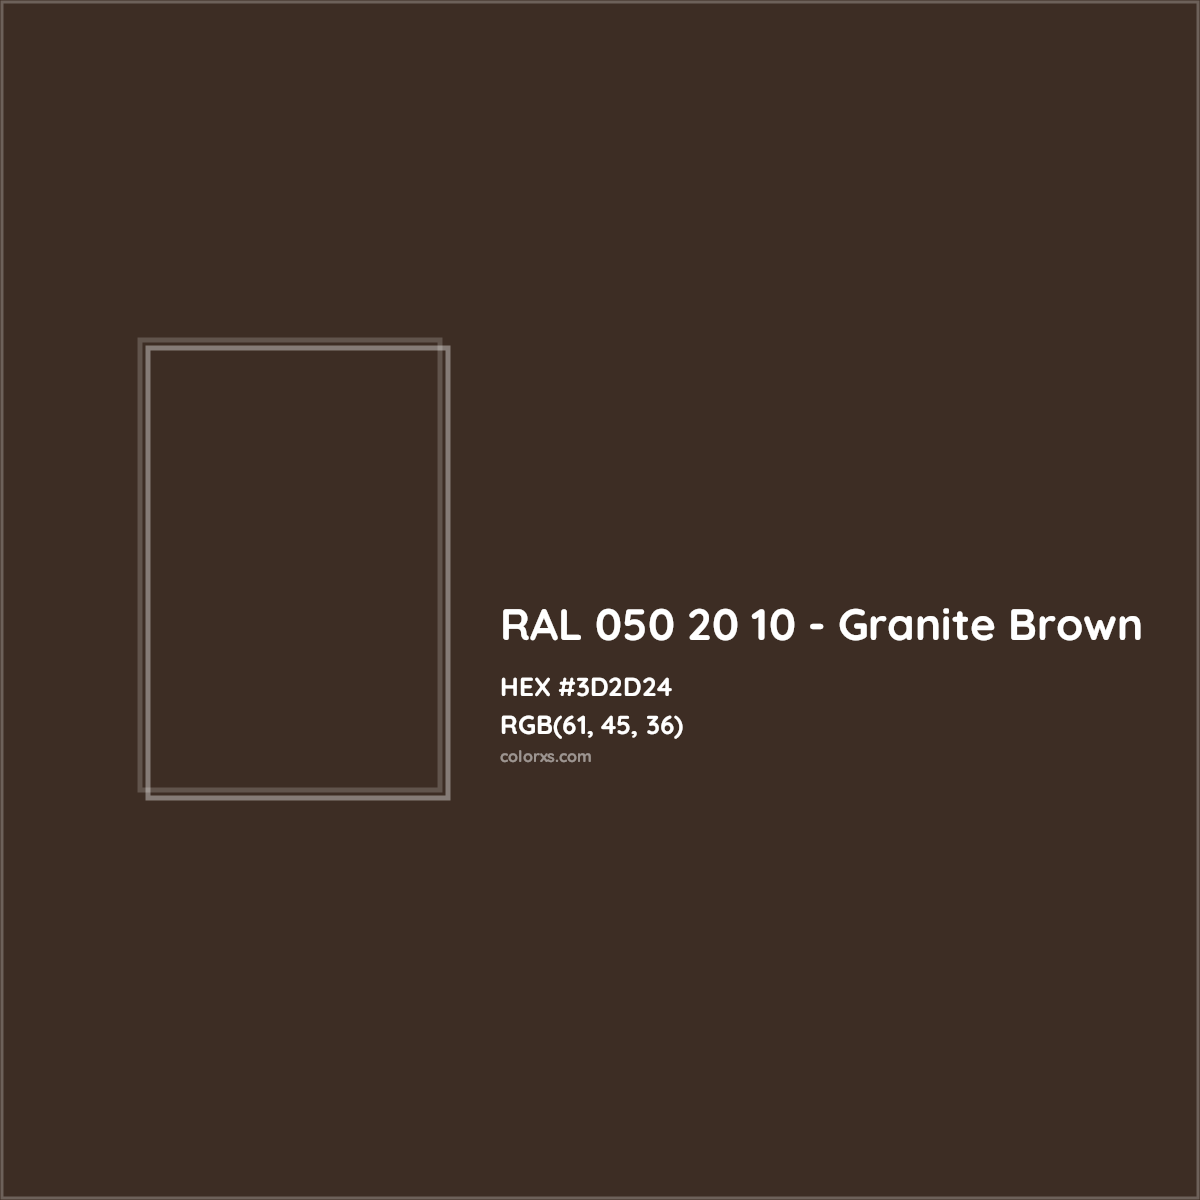 HEX #3D2D24 RAL 050 20 10 - Granite Brown CMS RAL Design - Color Code